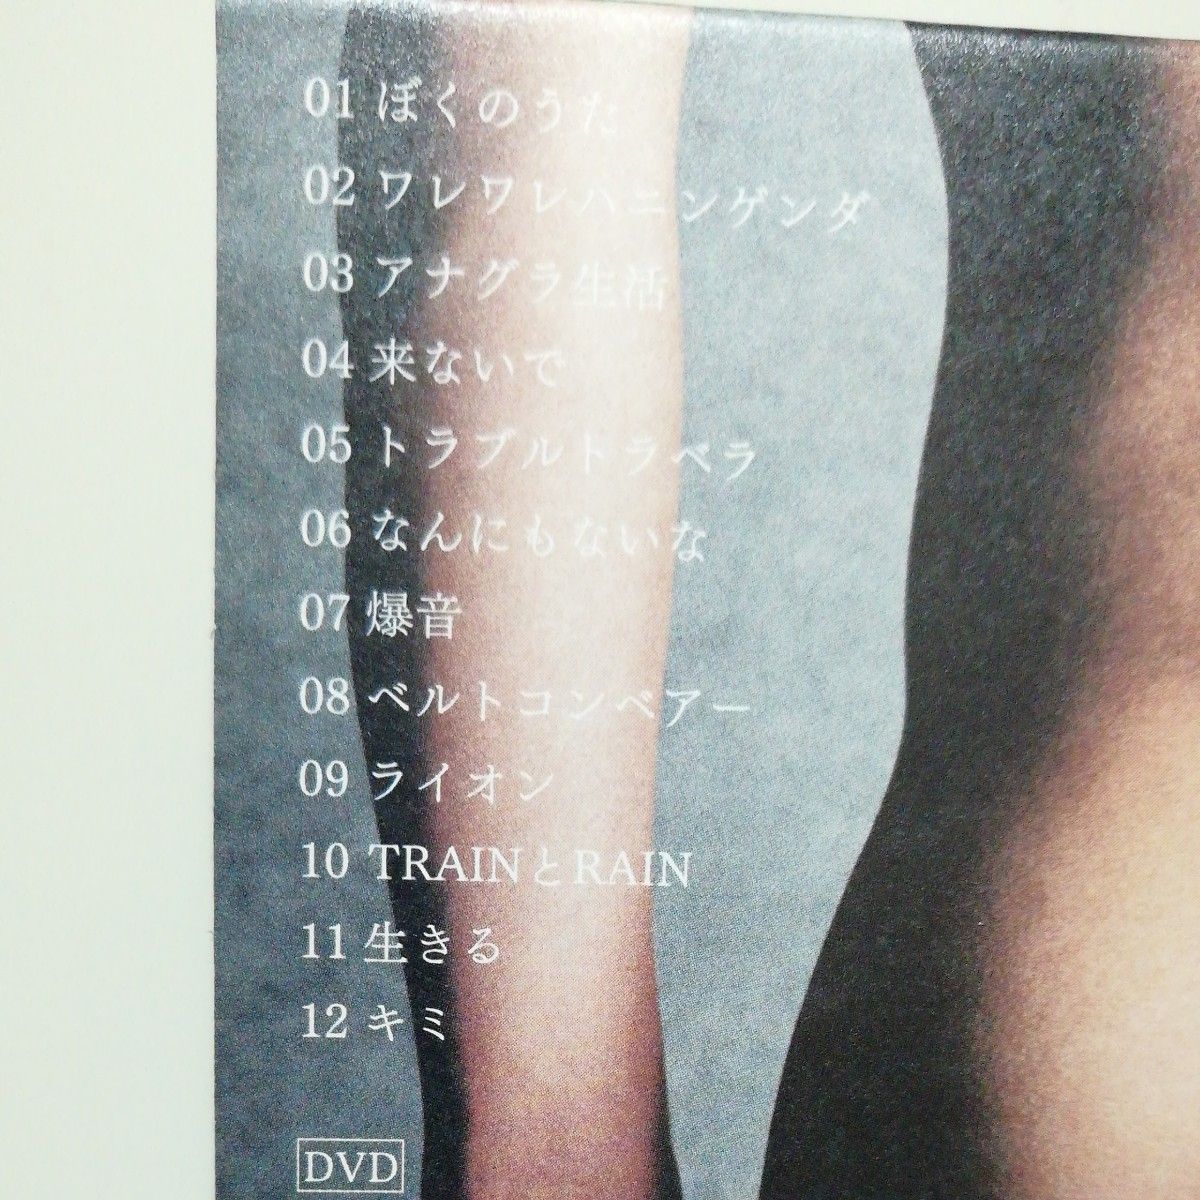 初回限定盤 DVD付 紙ジャケット仕様 渋谷すばる (関ジャニ∞) CD+DVD/二歳 19/10/9発売 オリコン加盟店